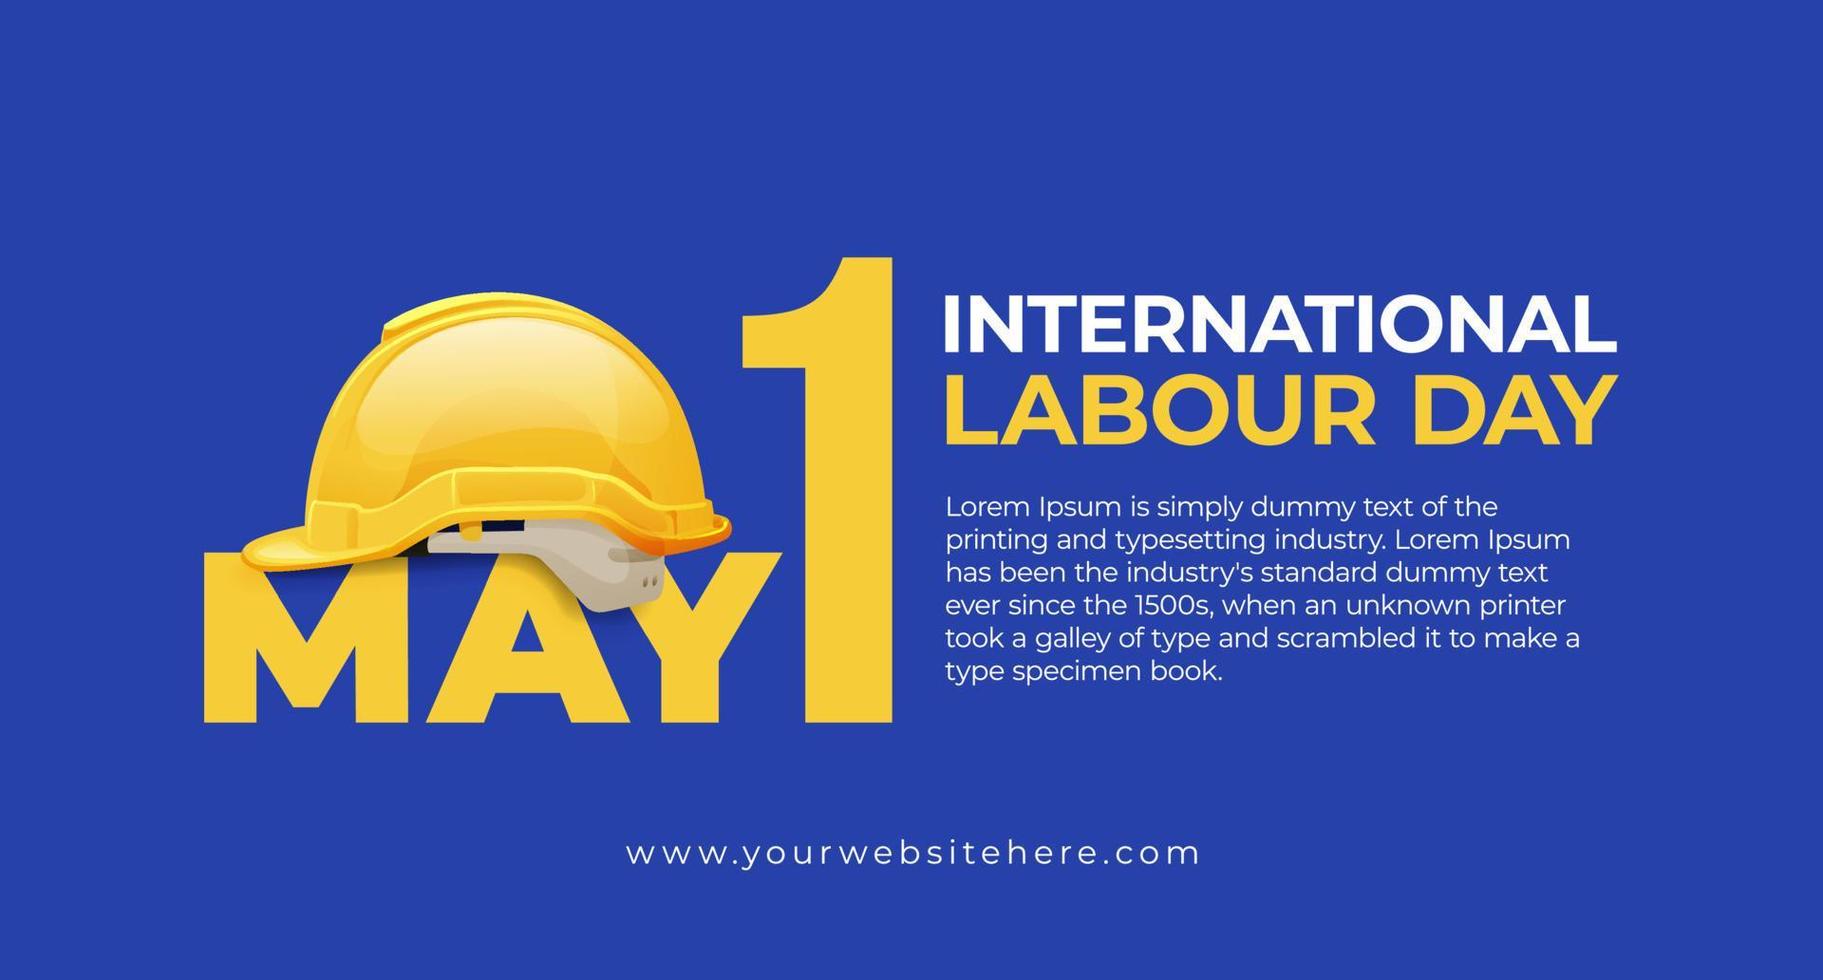 Internationale arbeid dag mei 1 banier met veiligheid helm illustratie concept vector